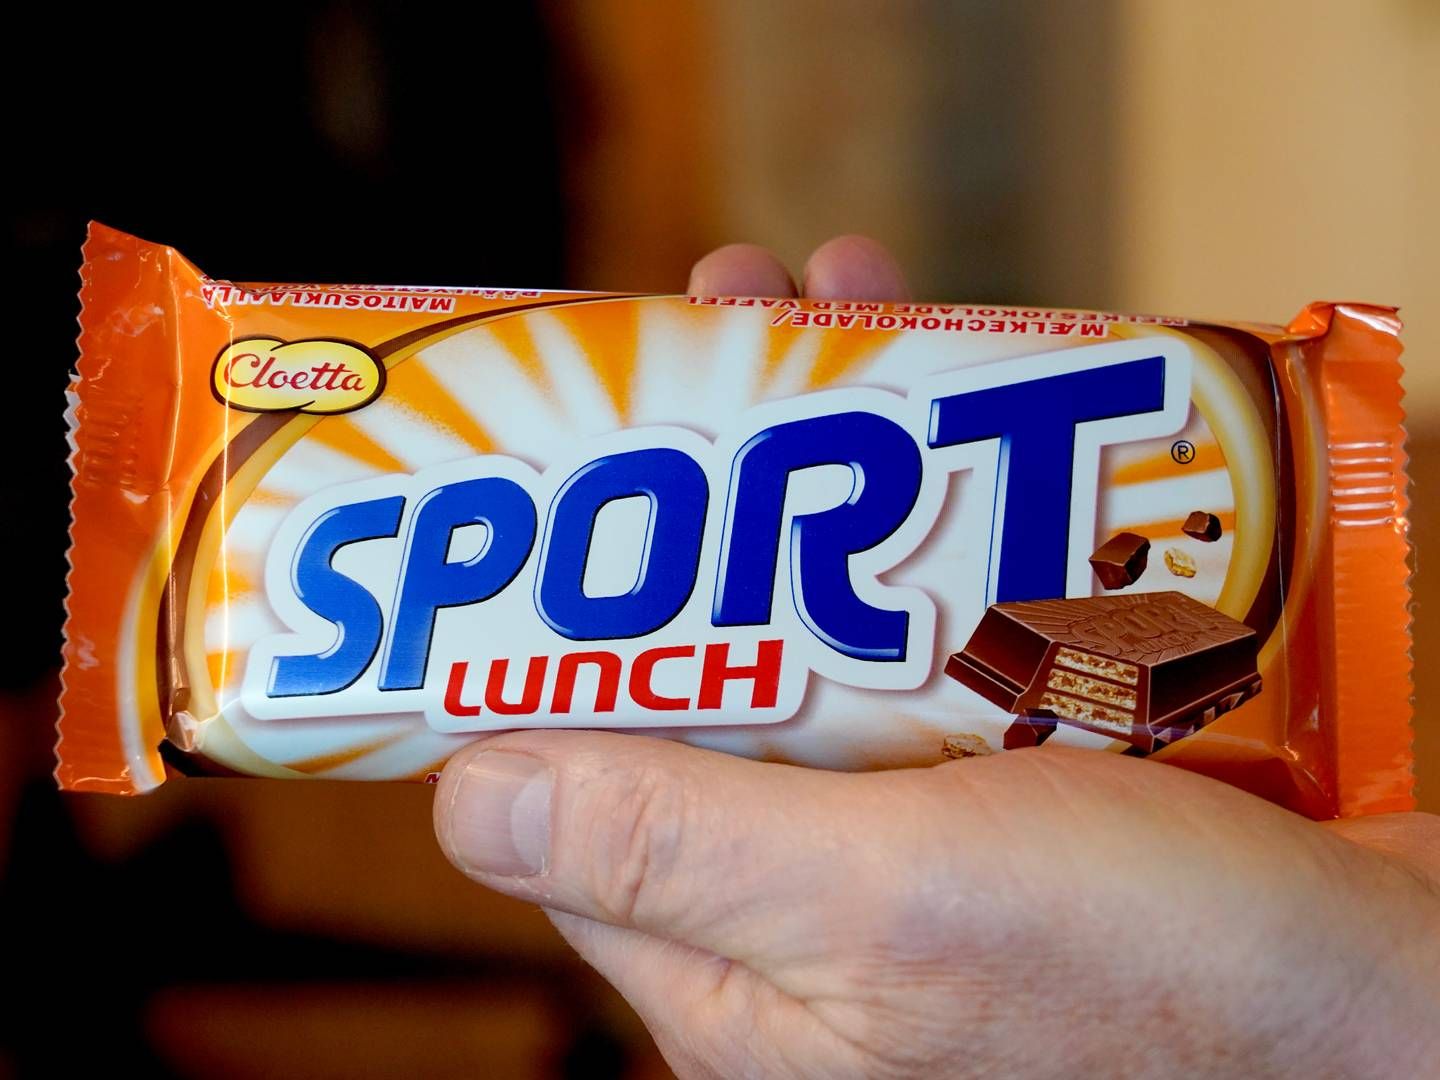 Cloetta stopper blant annet sjokoladen Sportlunch da de mistenker at det er problemer med produktet | Foto: Gorm Kallestad/NTB